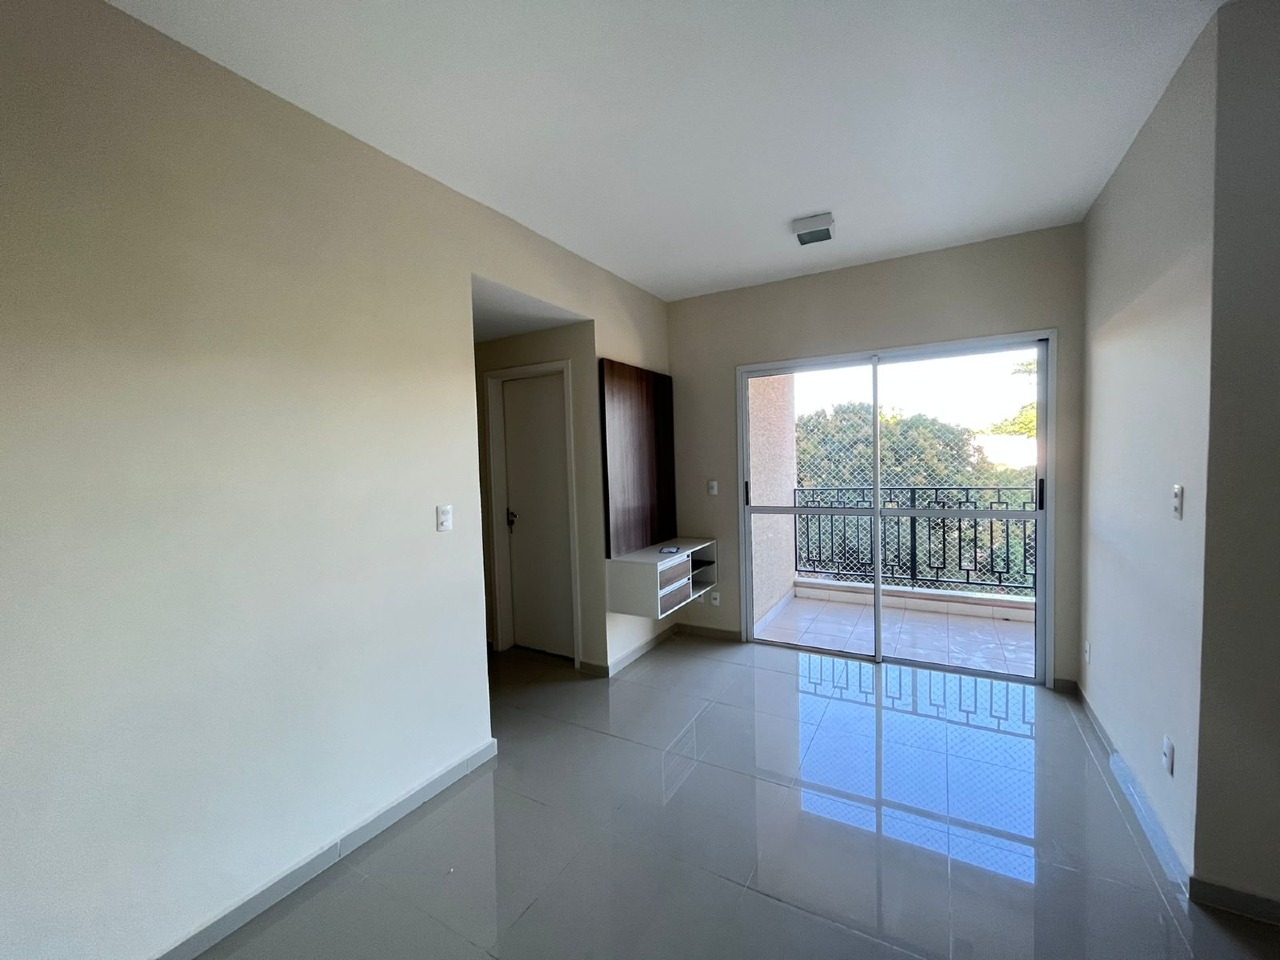 Apartamento à venda, 2 quartos, 1 vaga, no bairro Campestre em Piracicaba - SP